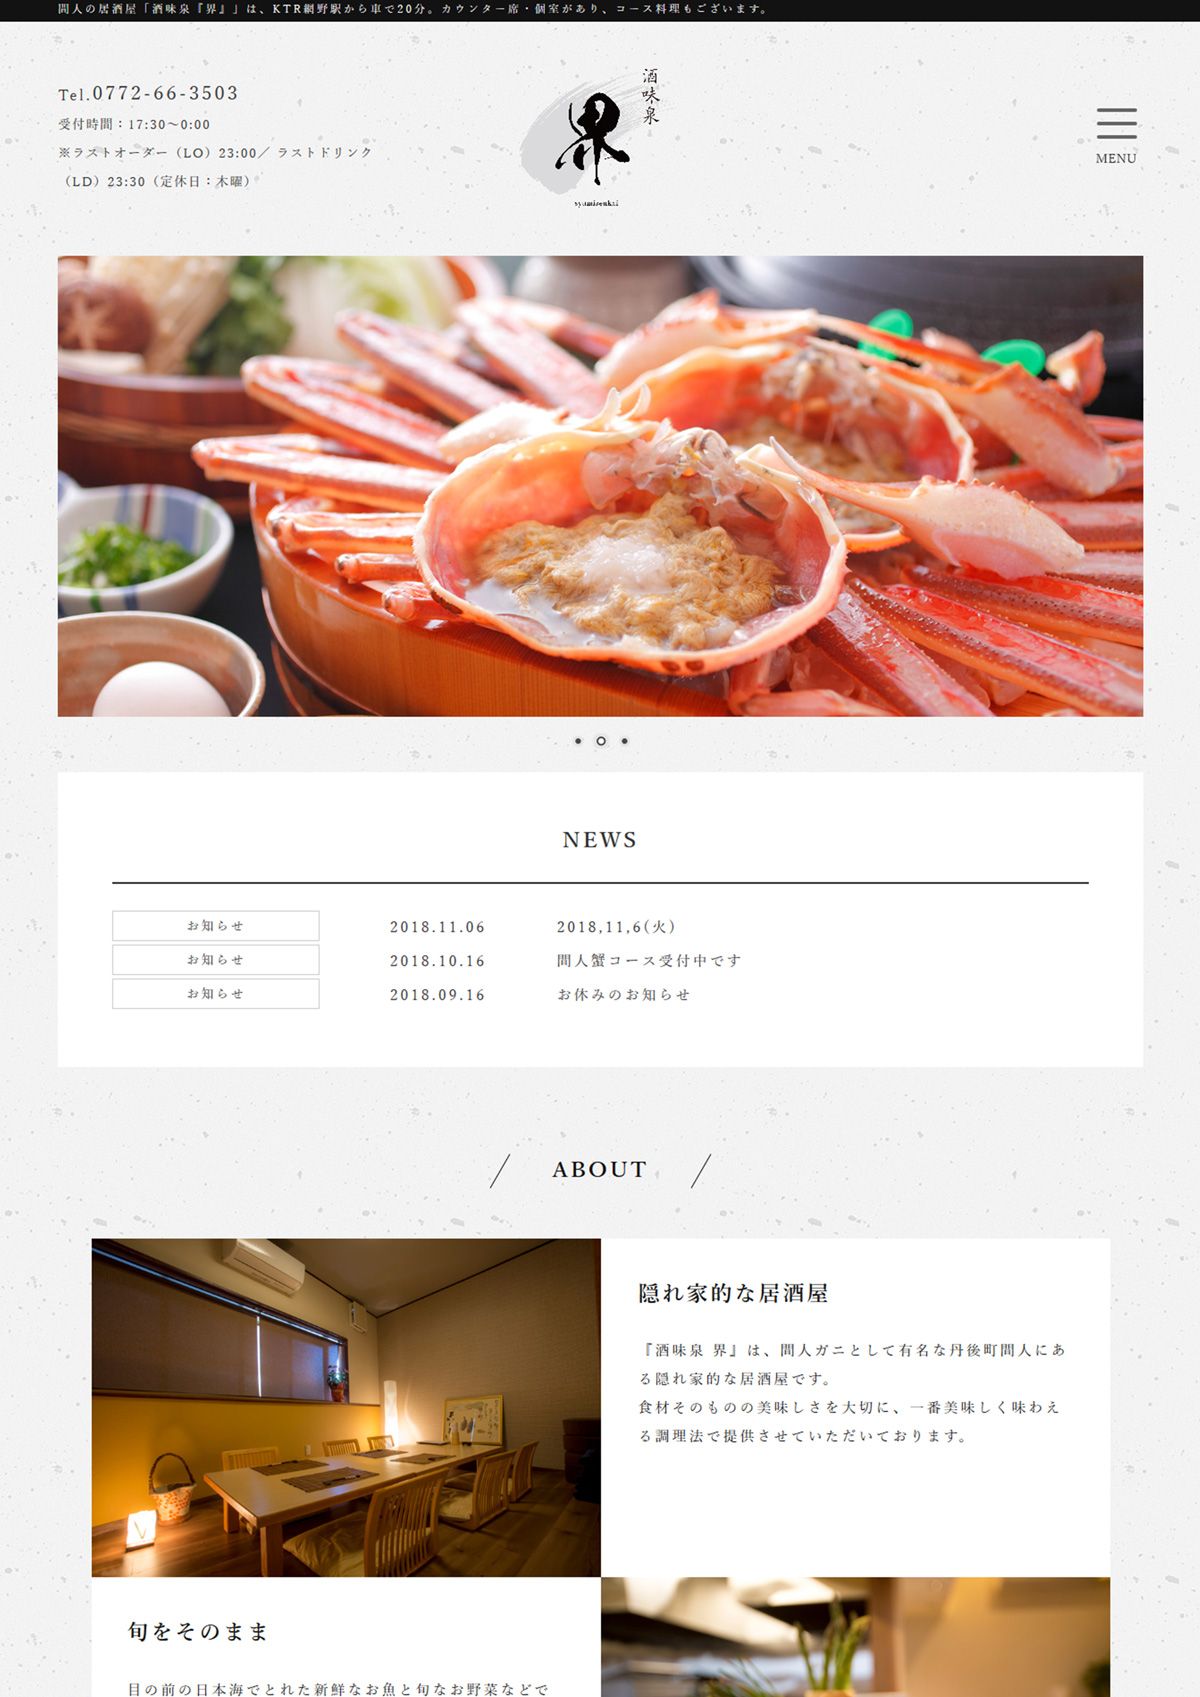 和モダンな居酒屋の新規サイト制作 京丹後市 与謝野町 ホームページ制作 ママチュデザイン